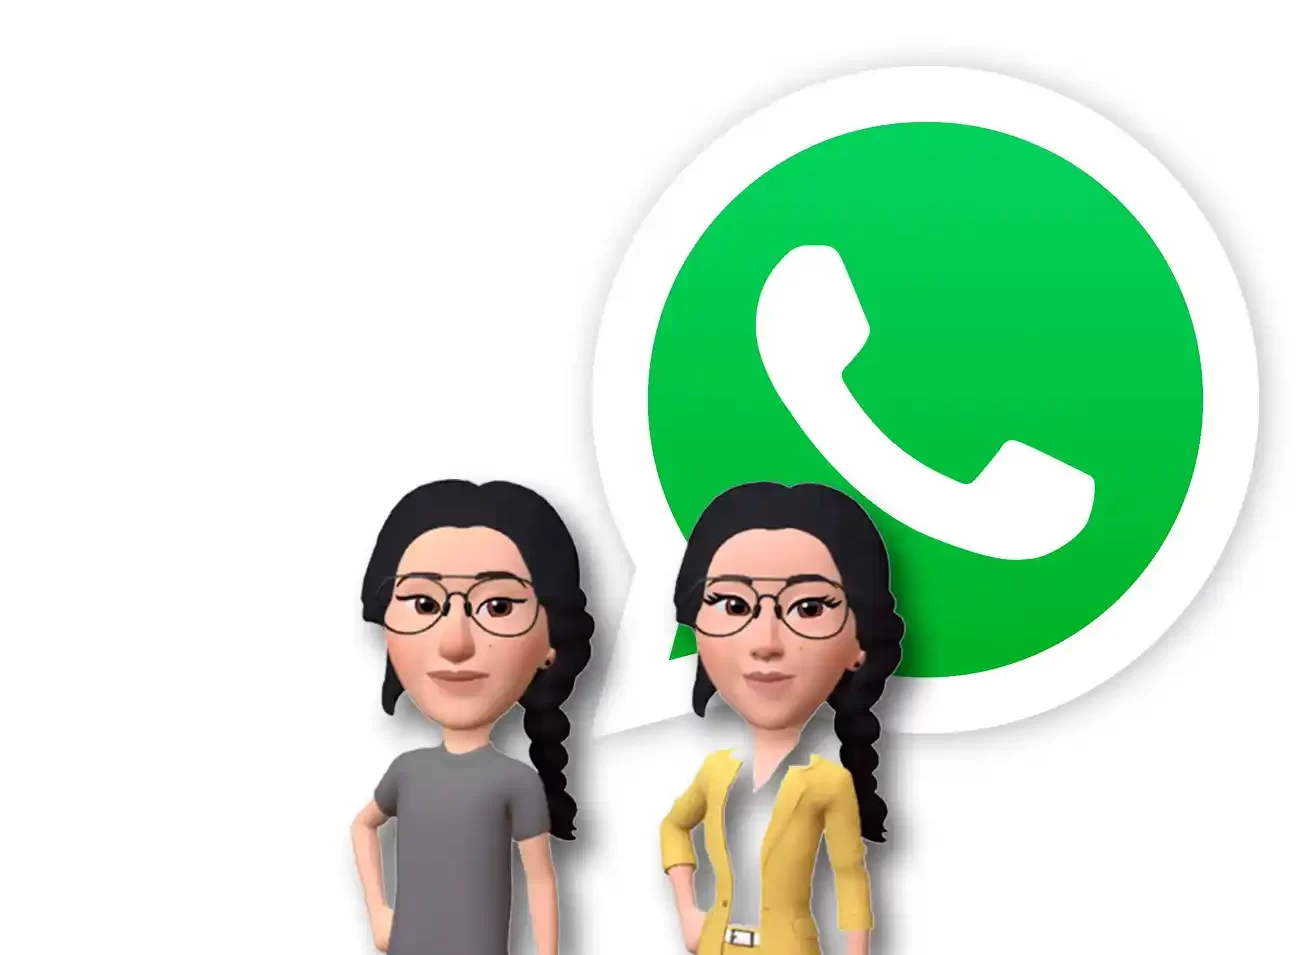 ¿Ya creaste tu avatar en WhatsApp? Conoce esta nueva función